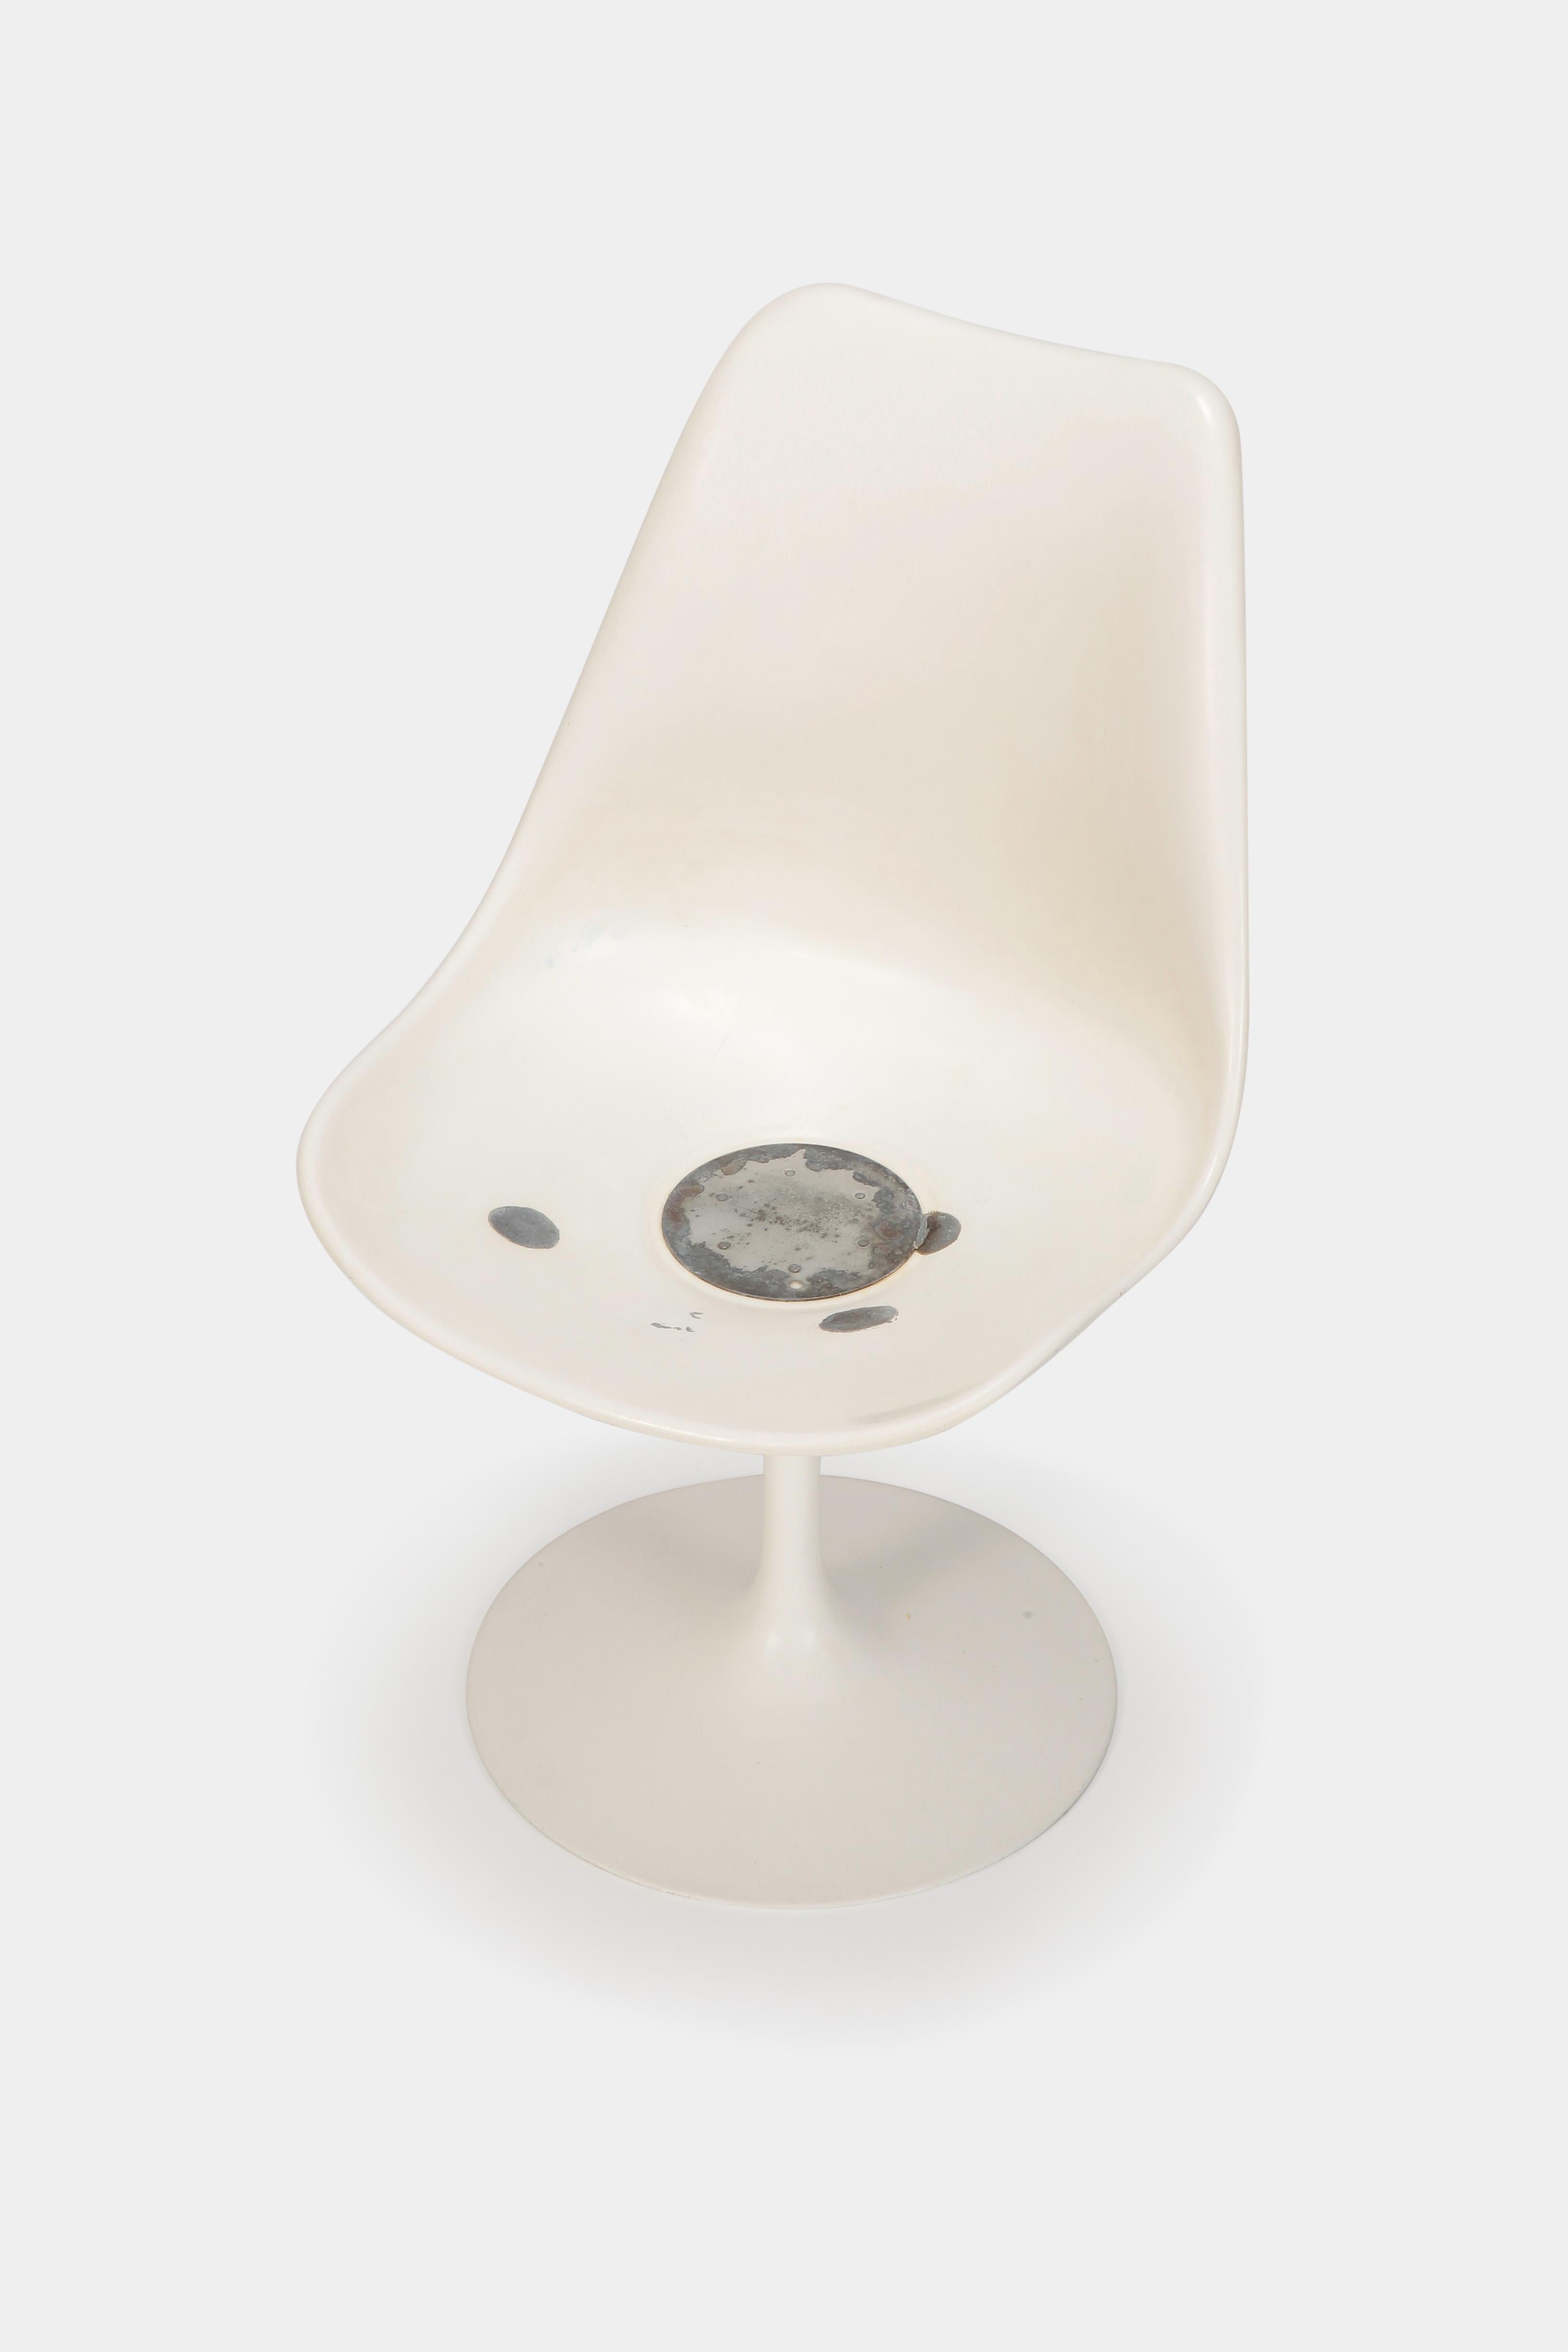 Aluminum Eero Saarinen “Tulip” Chair Knoll International, 1960s